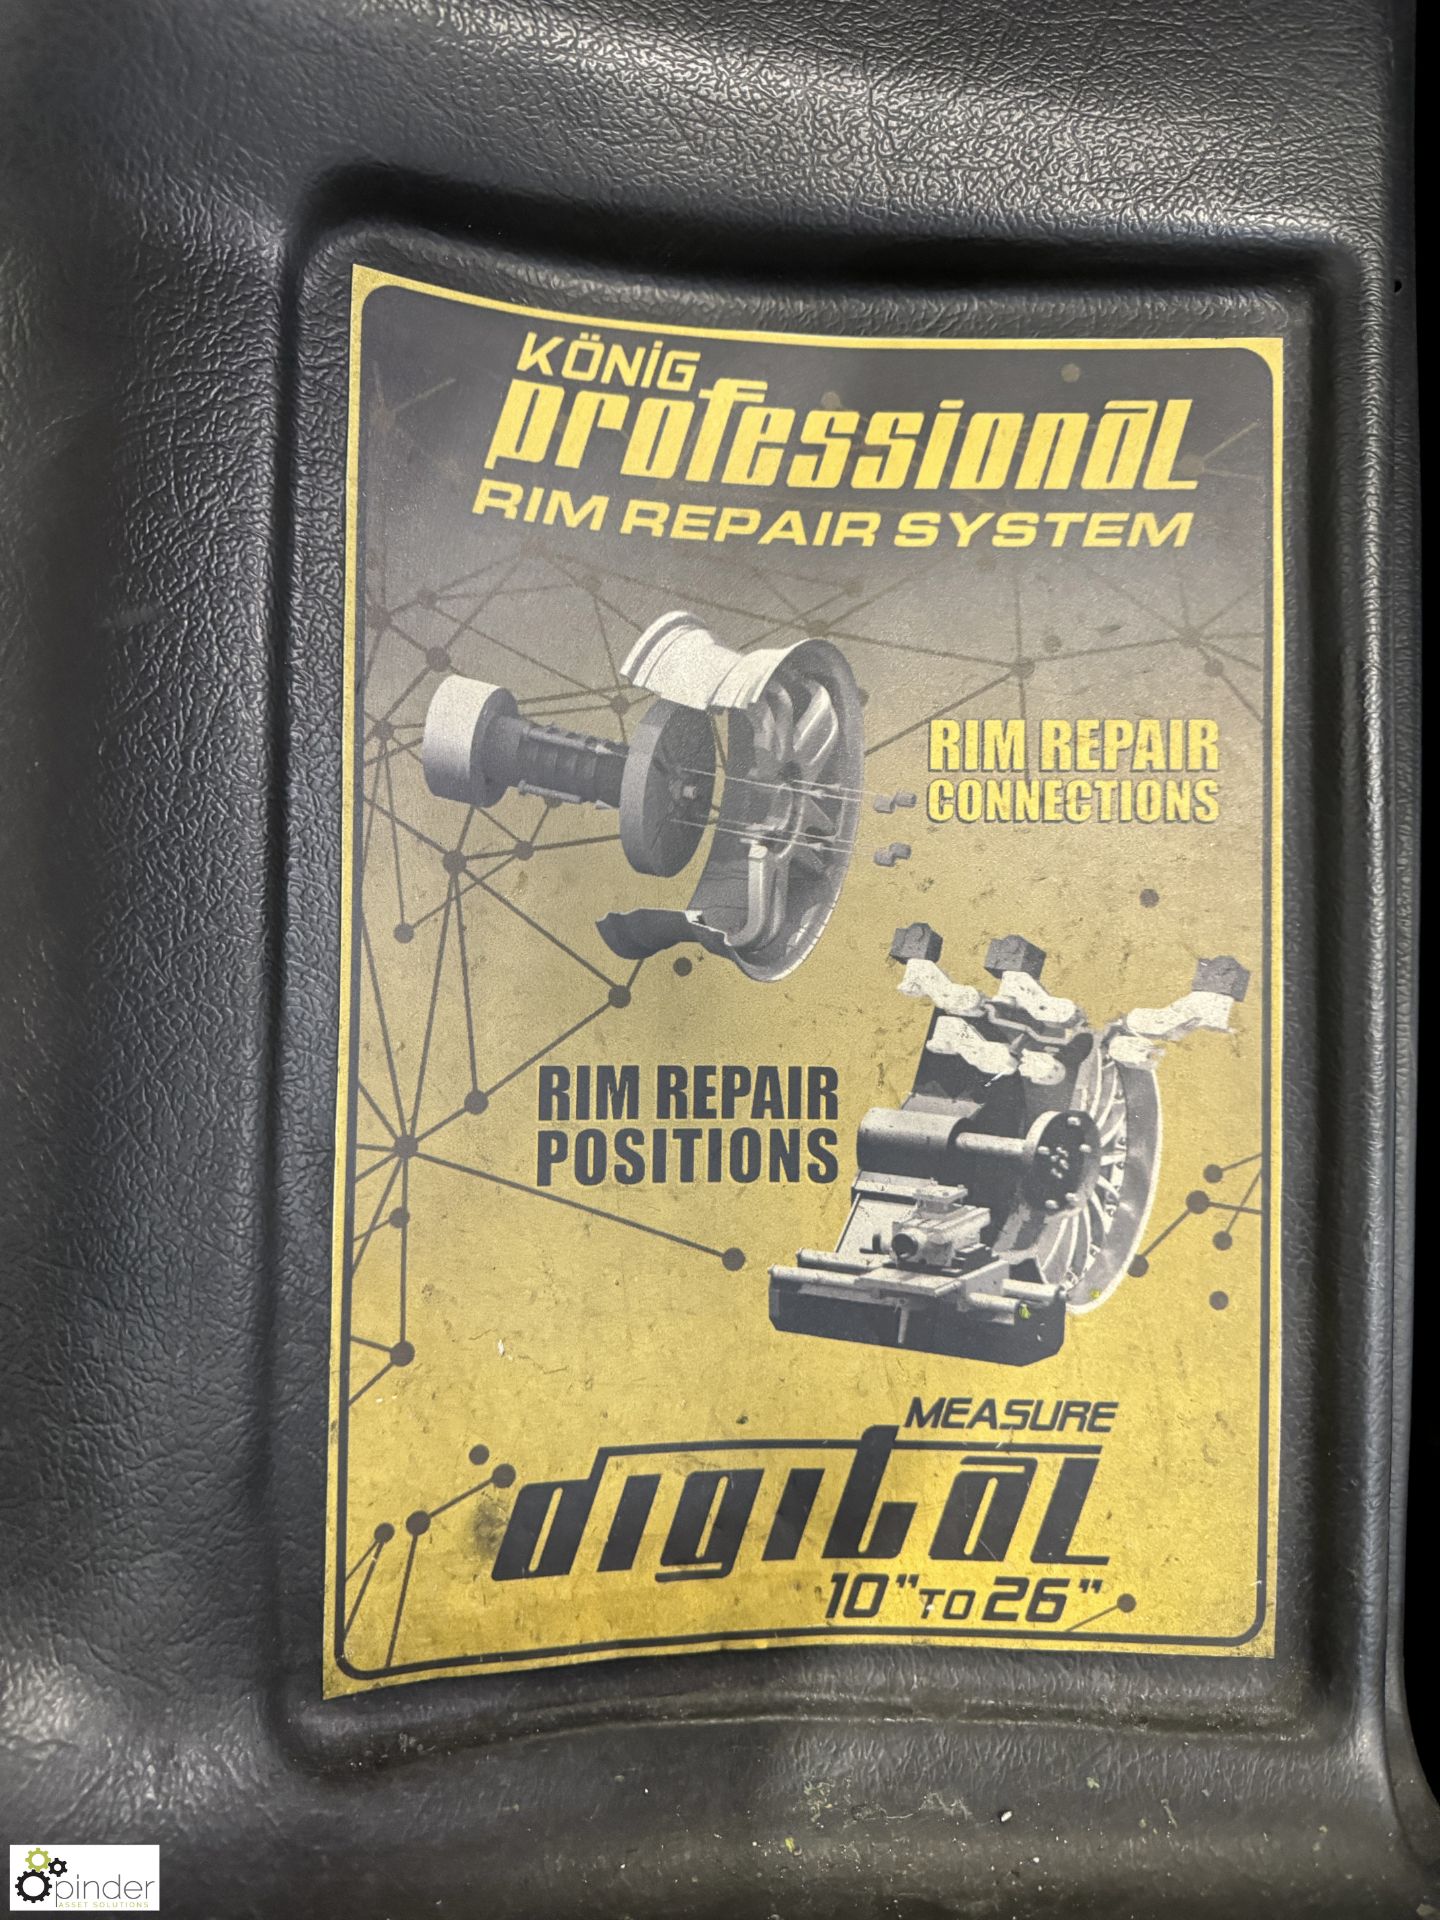 Atek Professional Digital Rim Repair System, rim capacity 10in to 26in, 380volts, year 2016, - Image 6 of 12